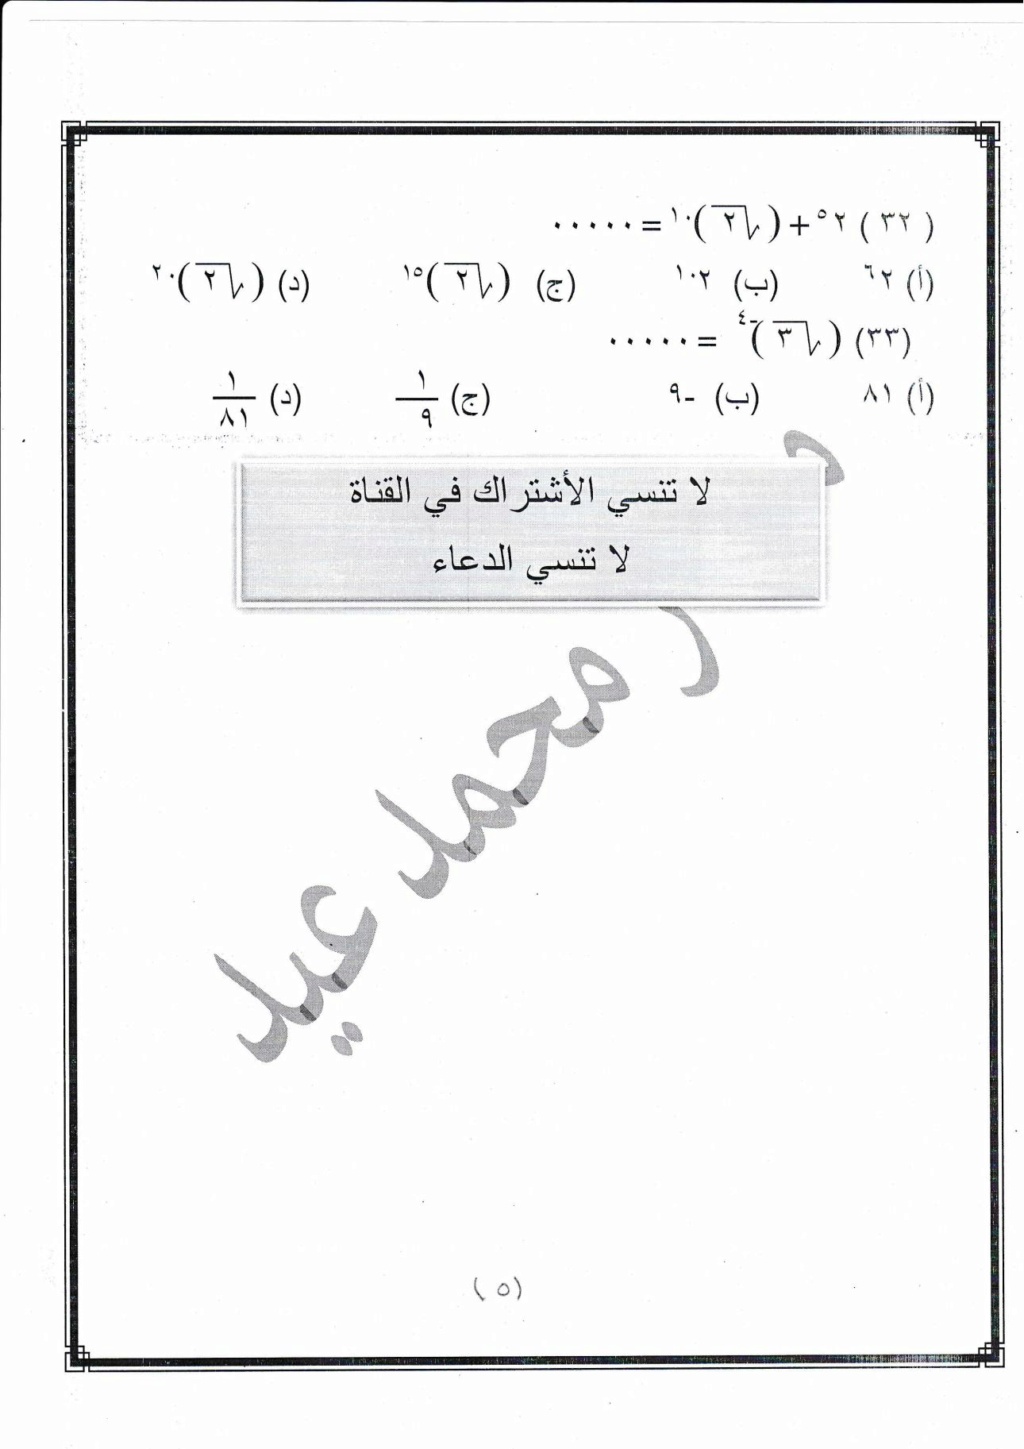 مراجعة رياضيات للصف الثانى الإعدادى على مقرر شهر إبريل مستر / محمد عيد 17426410